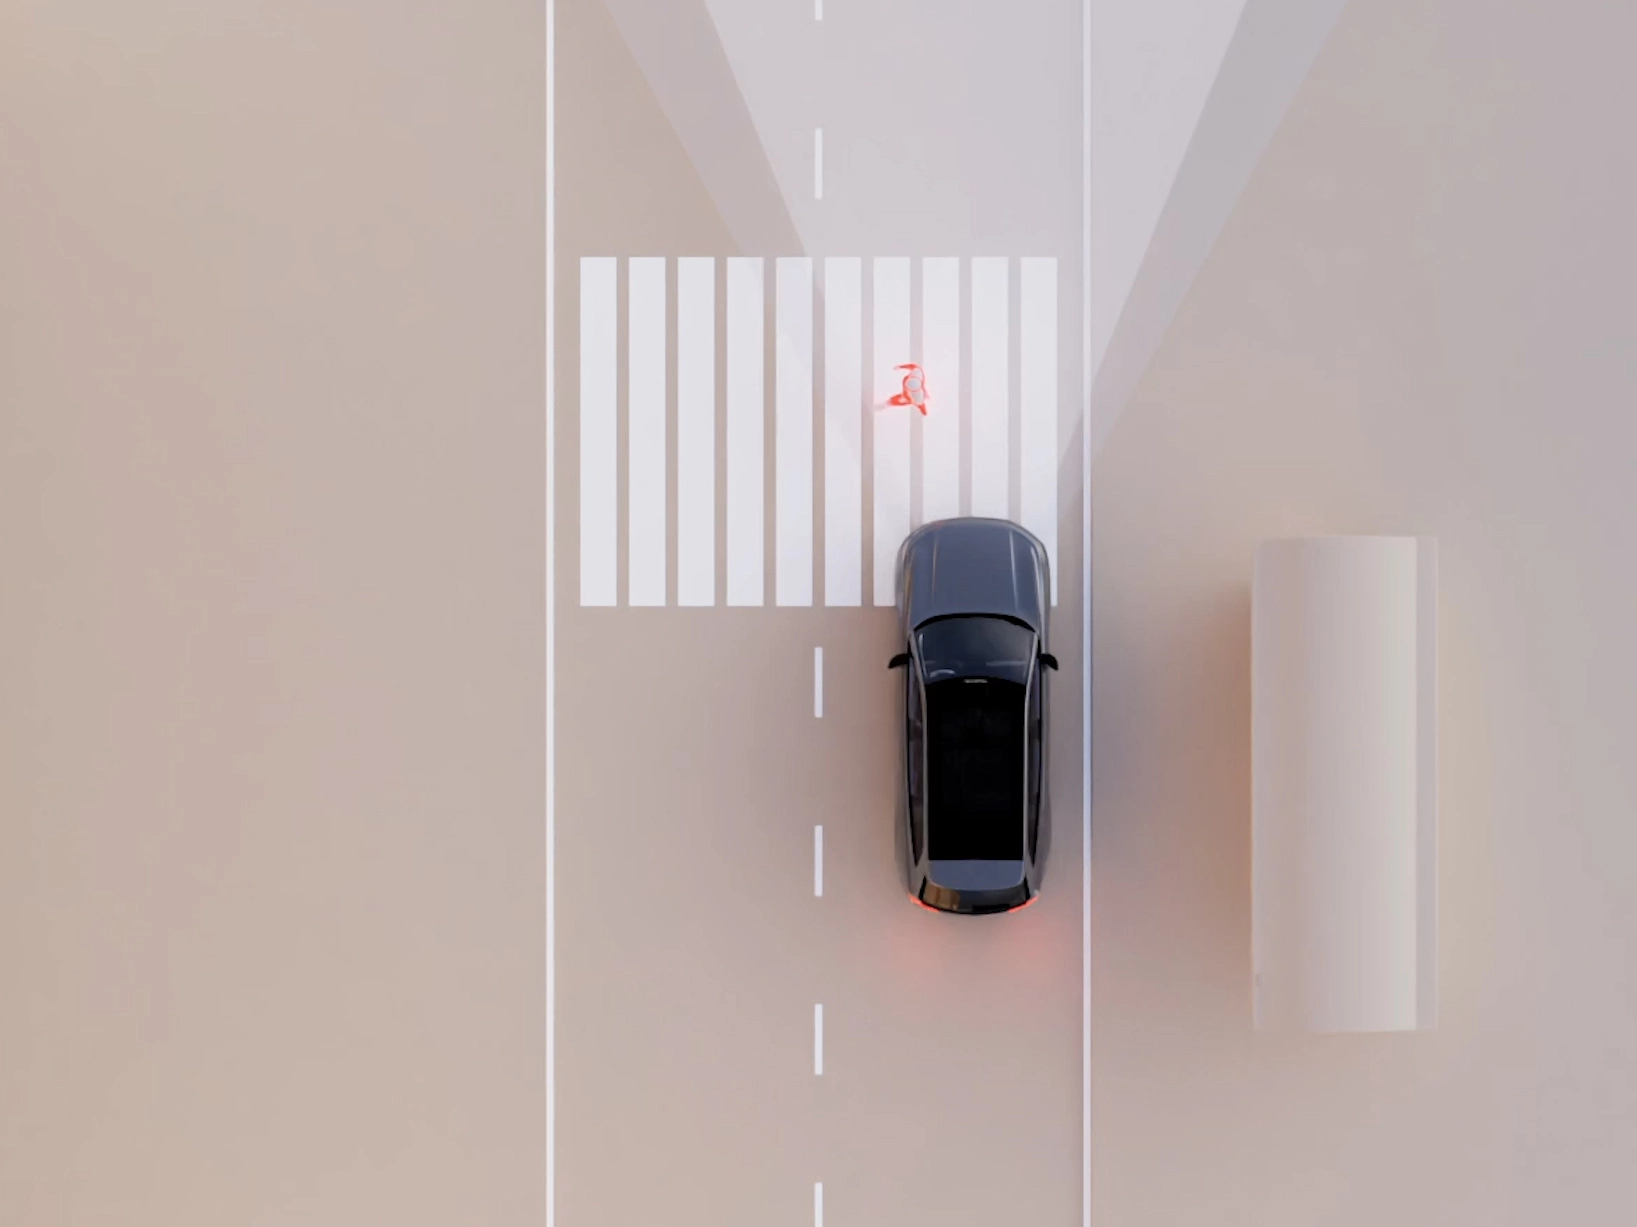 Ілюстративне зображення функції безпеки автомобіля Volvo класу SUV під час роботи.